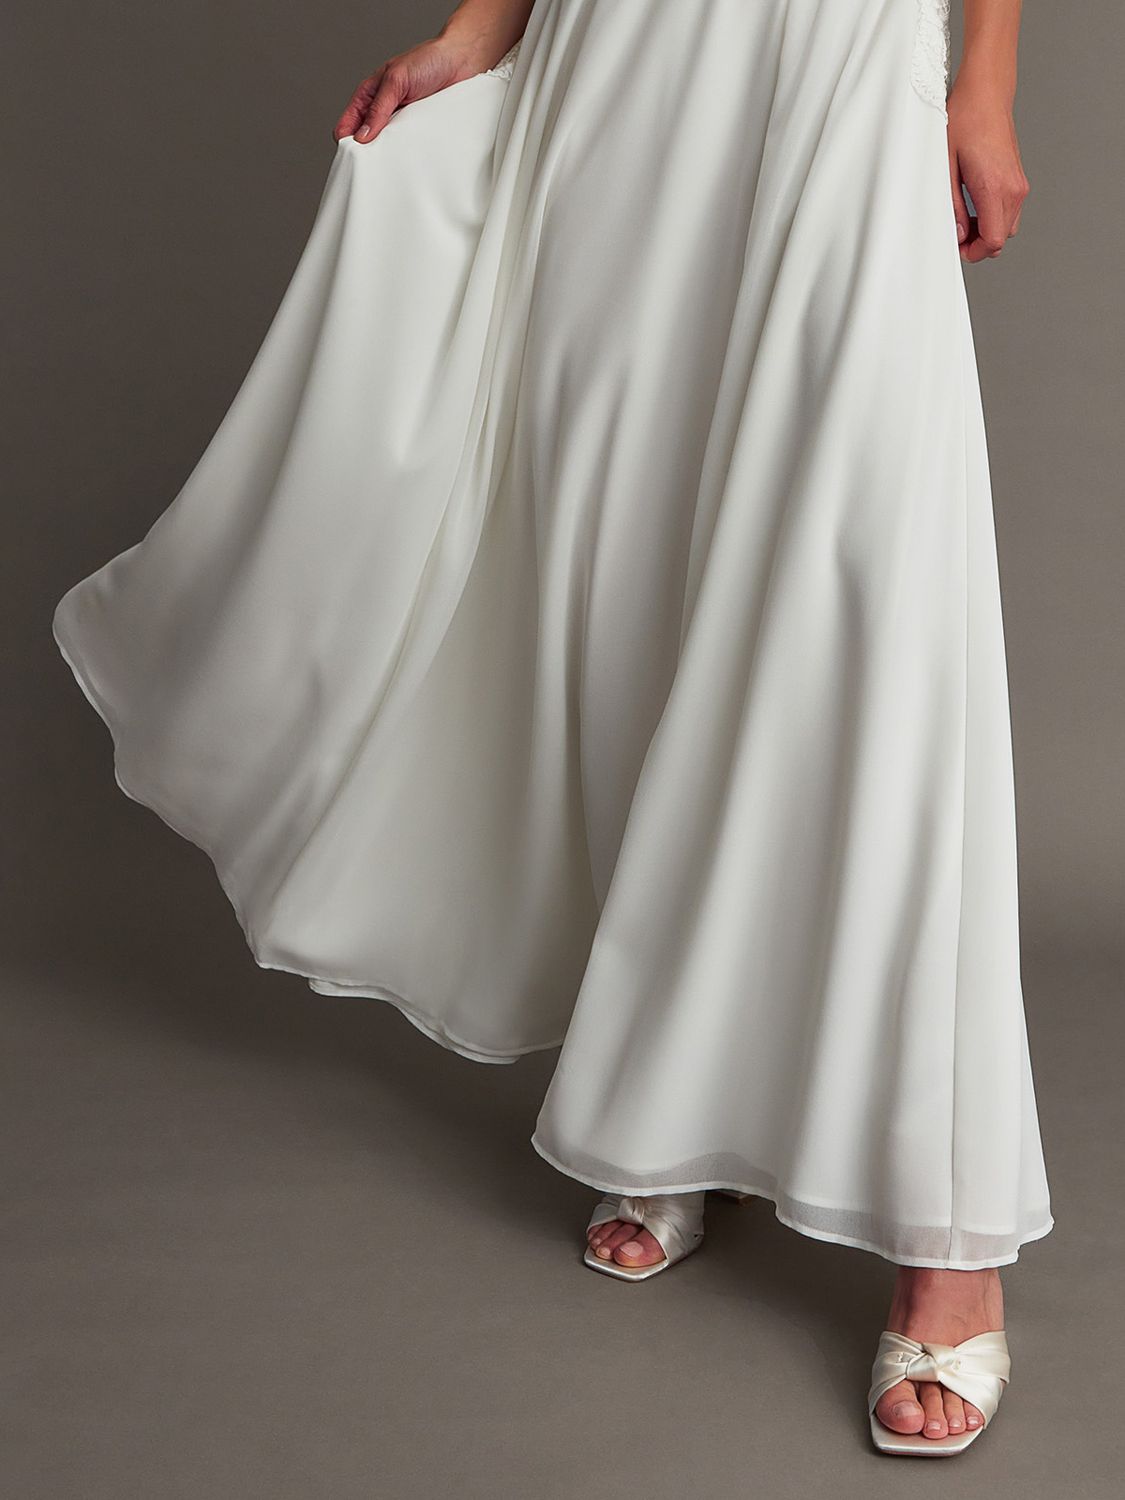 Monsoon Maddie Lace Bardot Maxi Dress, Ivory, 6